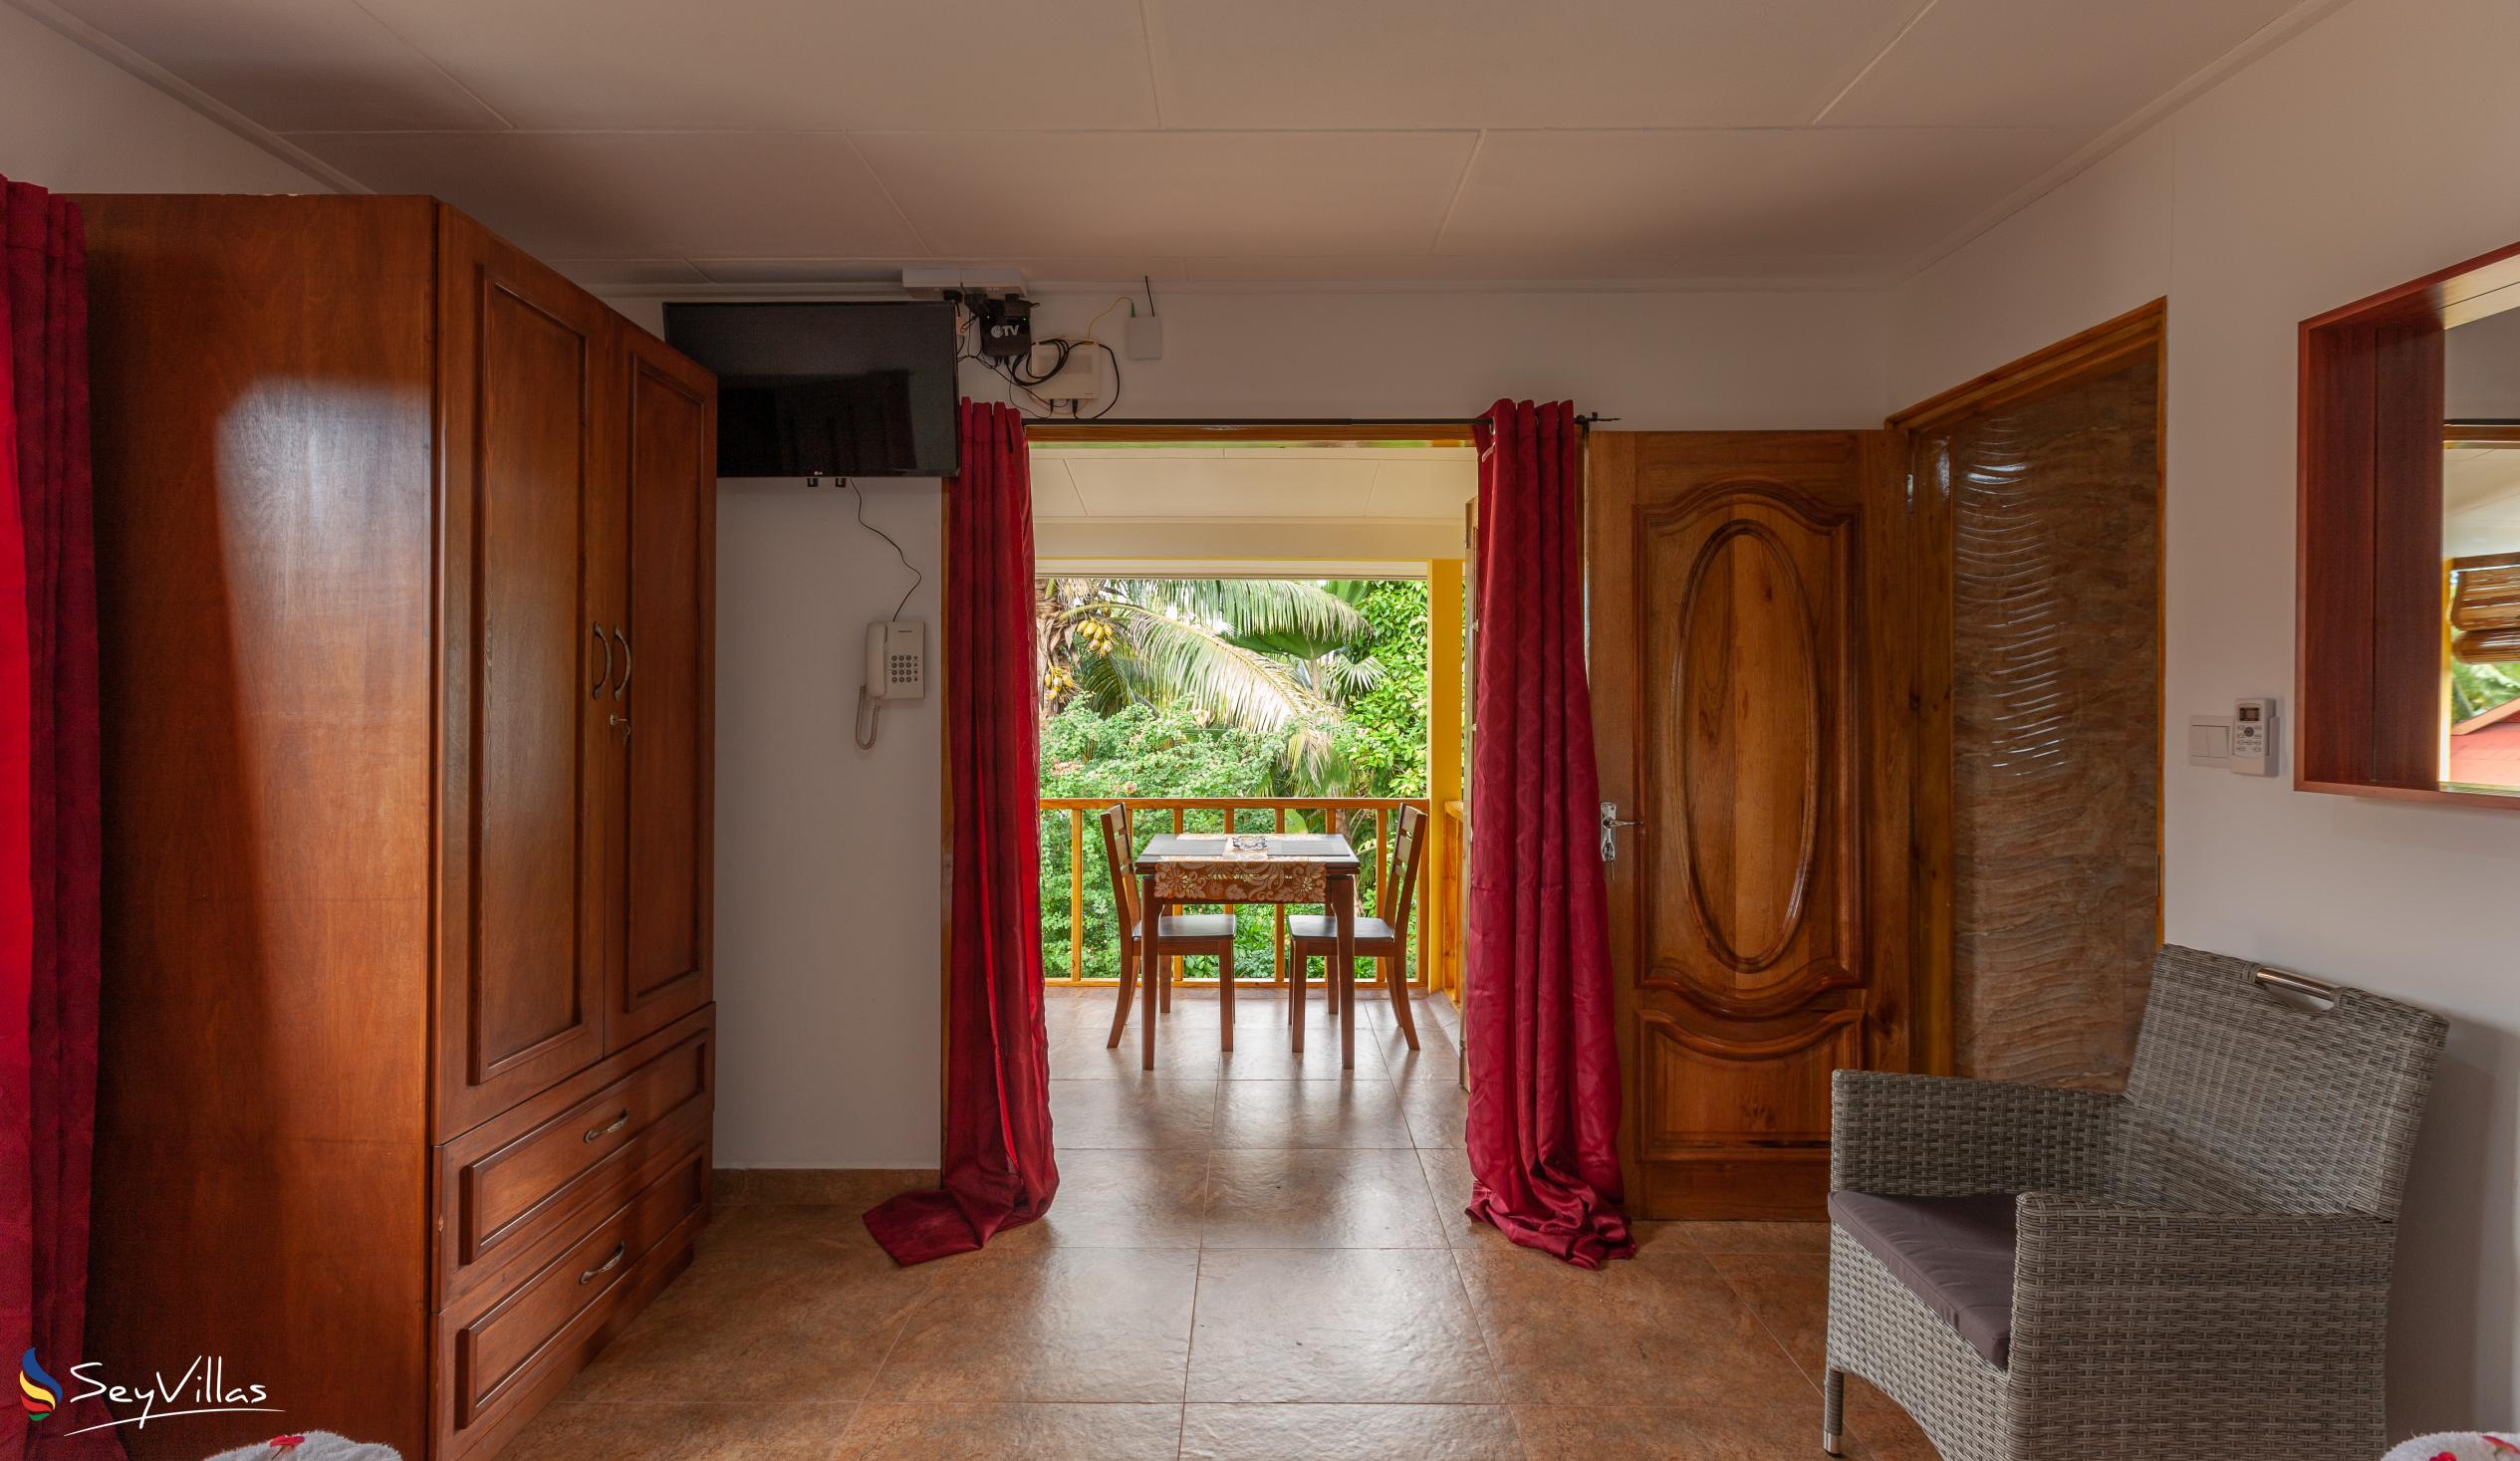 Foto 27: Dream Holiday Self Catering - Appartamento Familiare - La Digue (Seychelles)